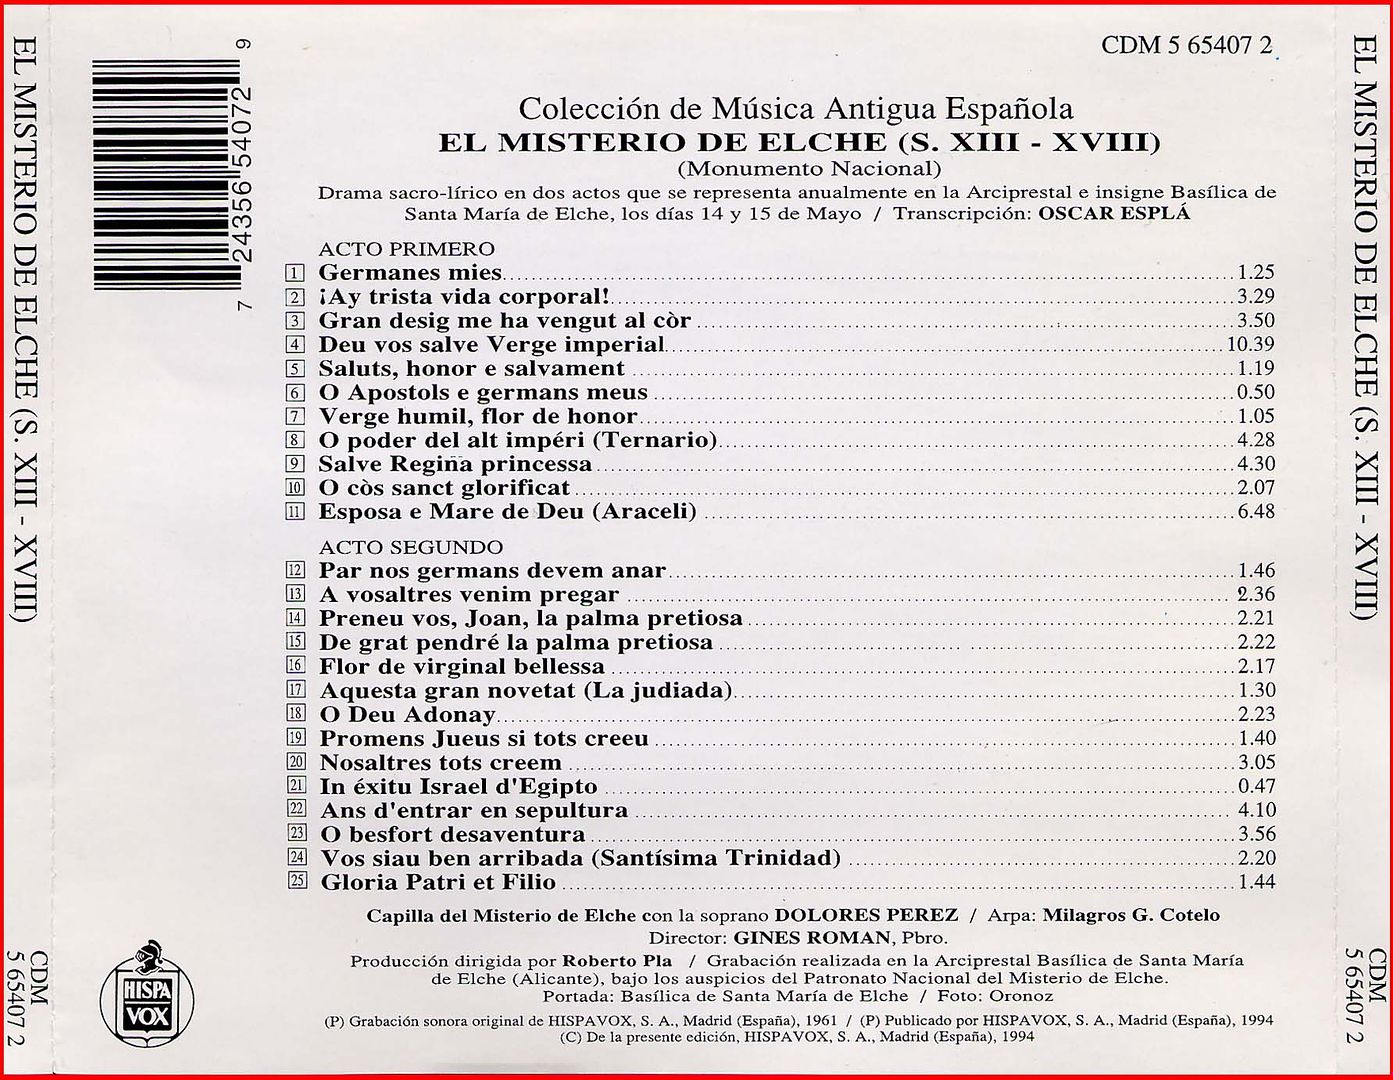 Misteri2 - Coleccion de Musica Antigua Española: El misterio de Elche (S.XIII-XVIII)